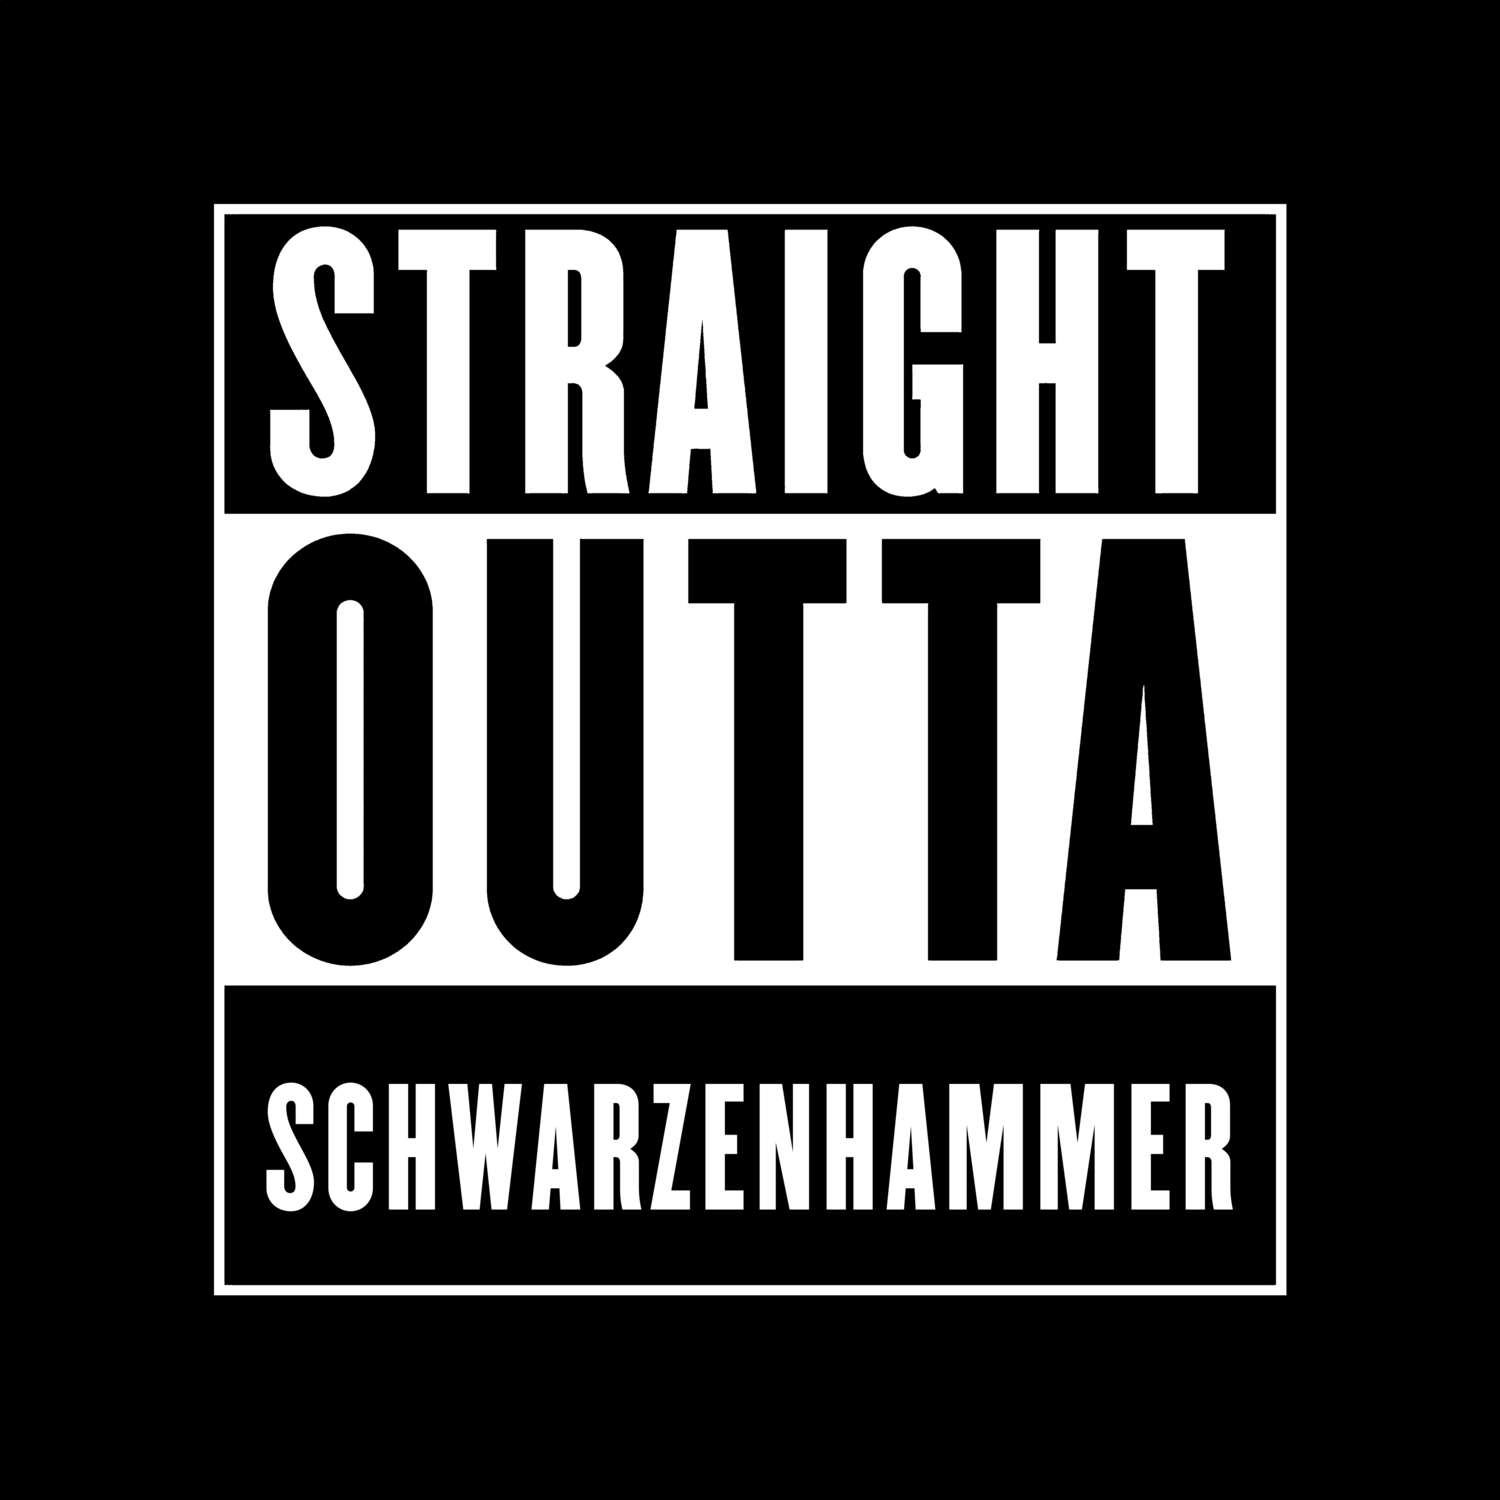 Schwarzenhammer T-Shirt »Straight Outta«